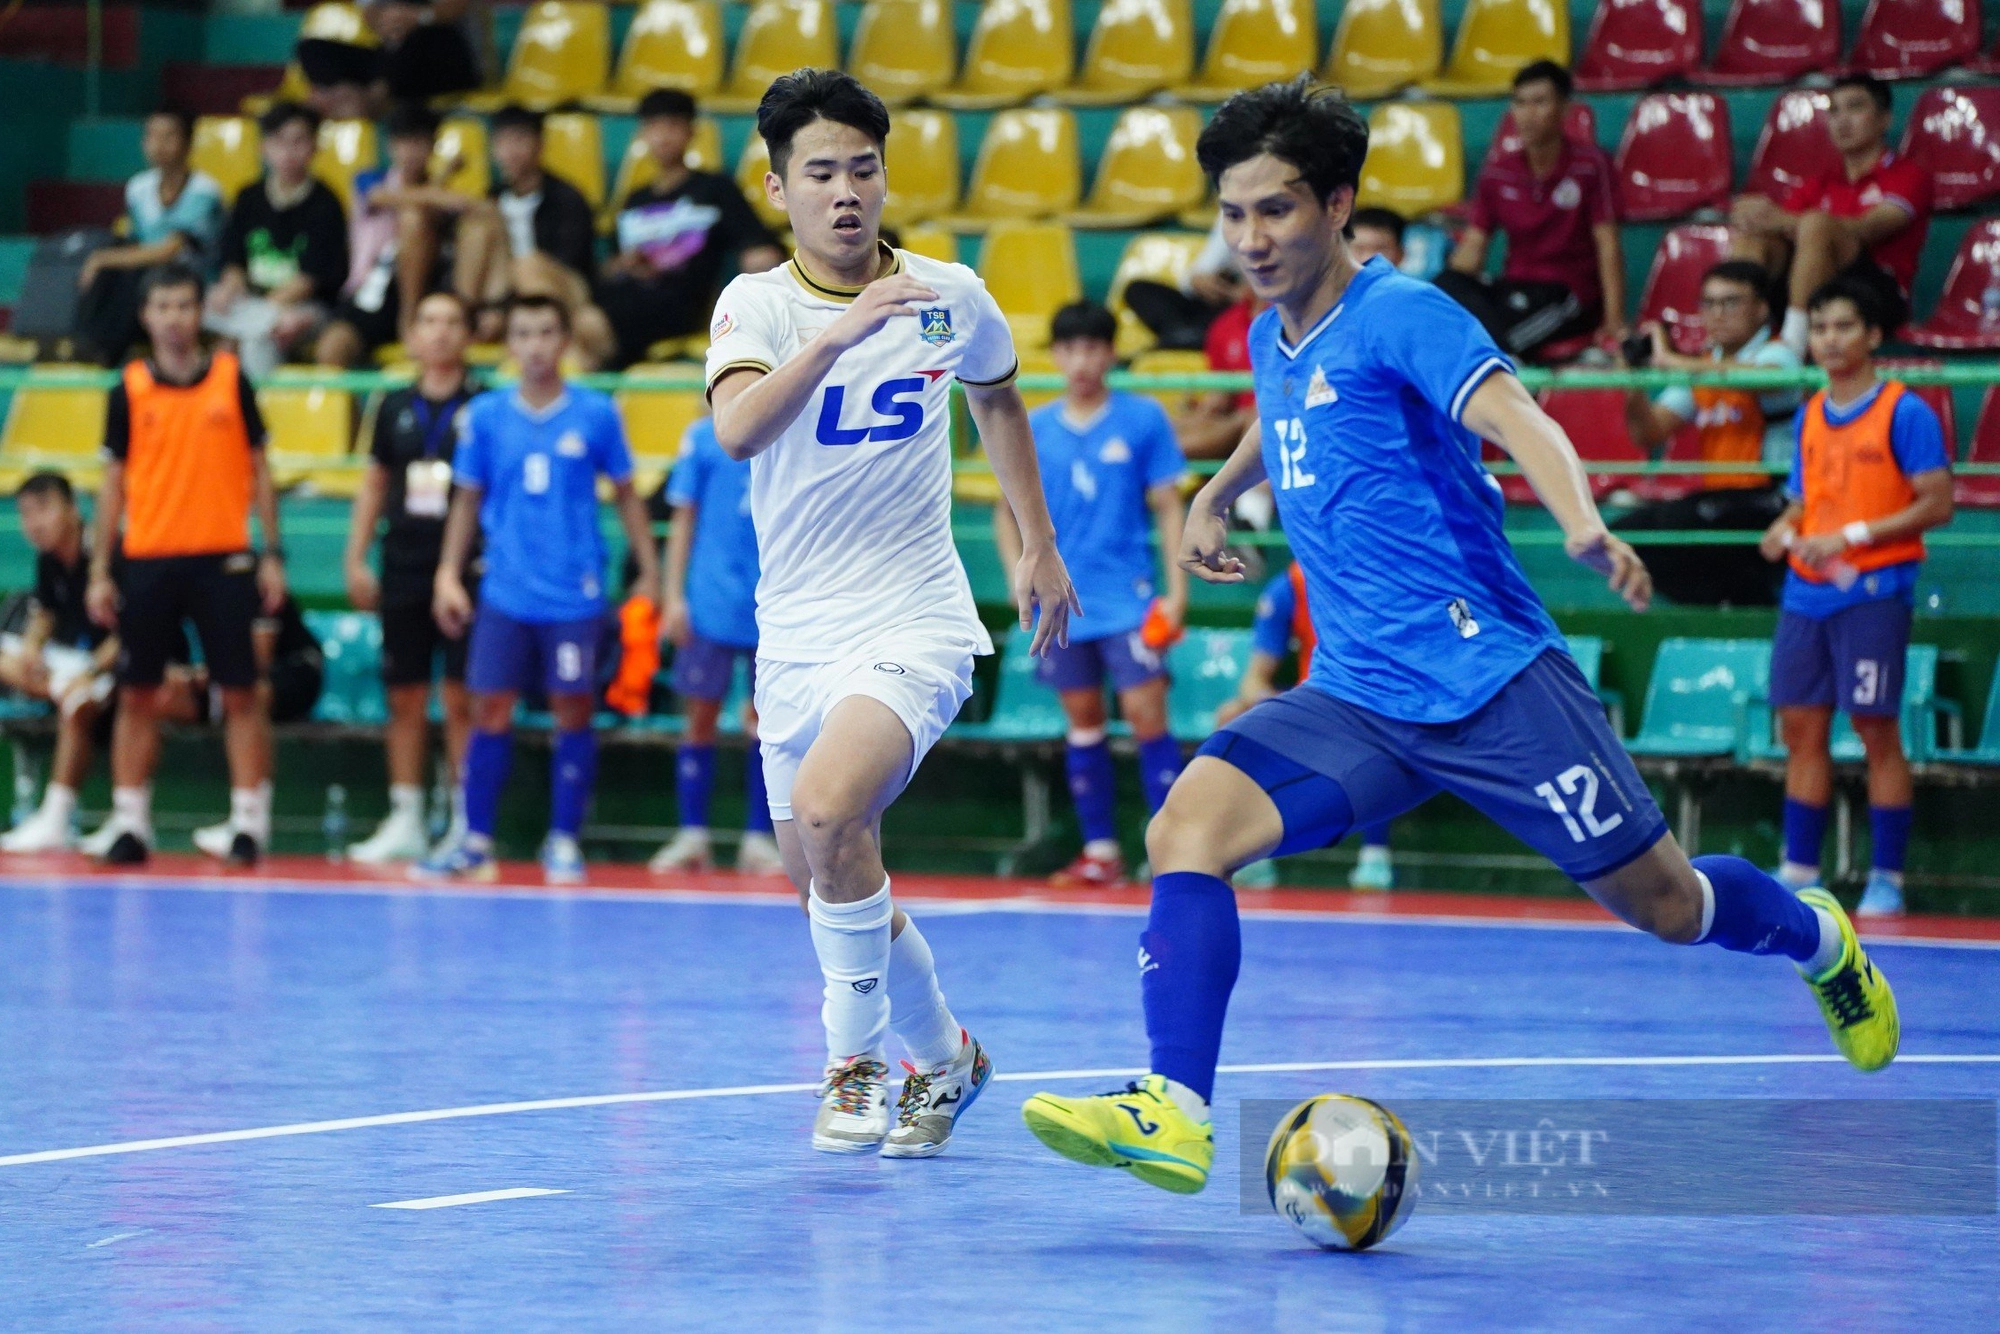 Thái Sơn Nam thắng kịch tính trên chấm luân lưu trong trận “siêu kinh điển” futsal - Ảnh 4.